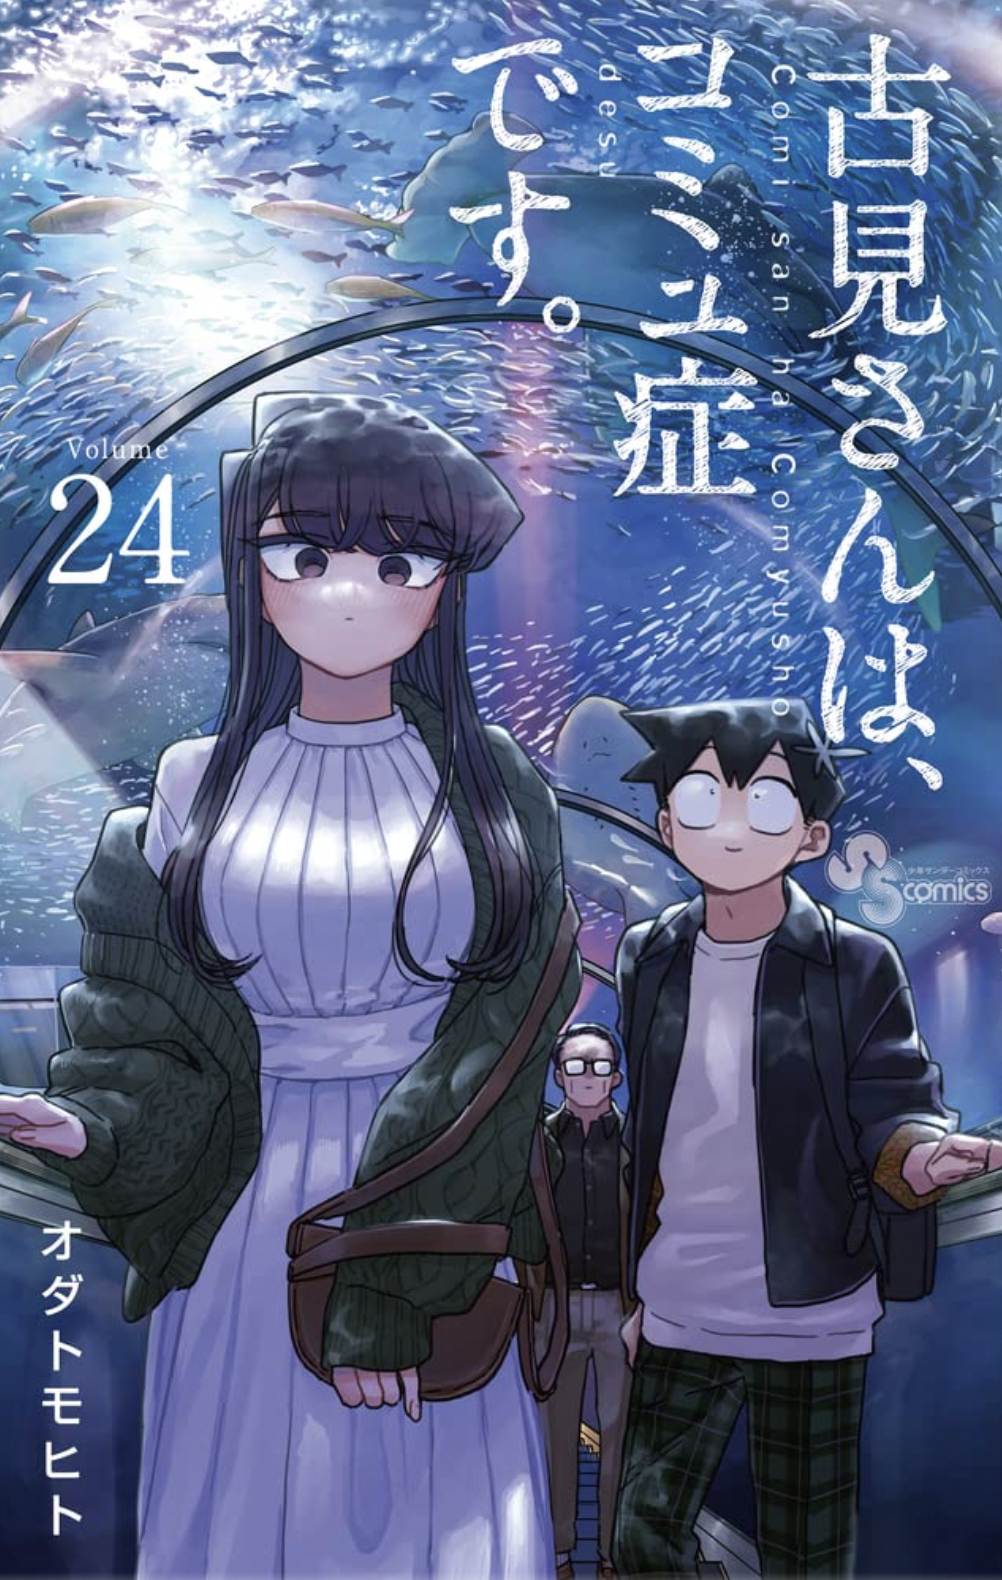 Volume 24, Komi-san wa Komyushou Desu Wiki